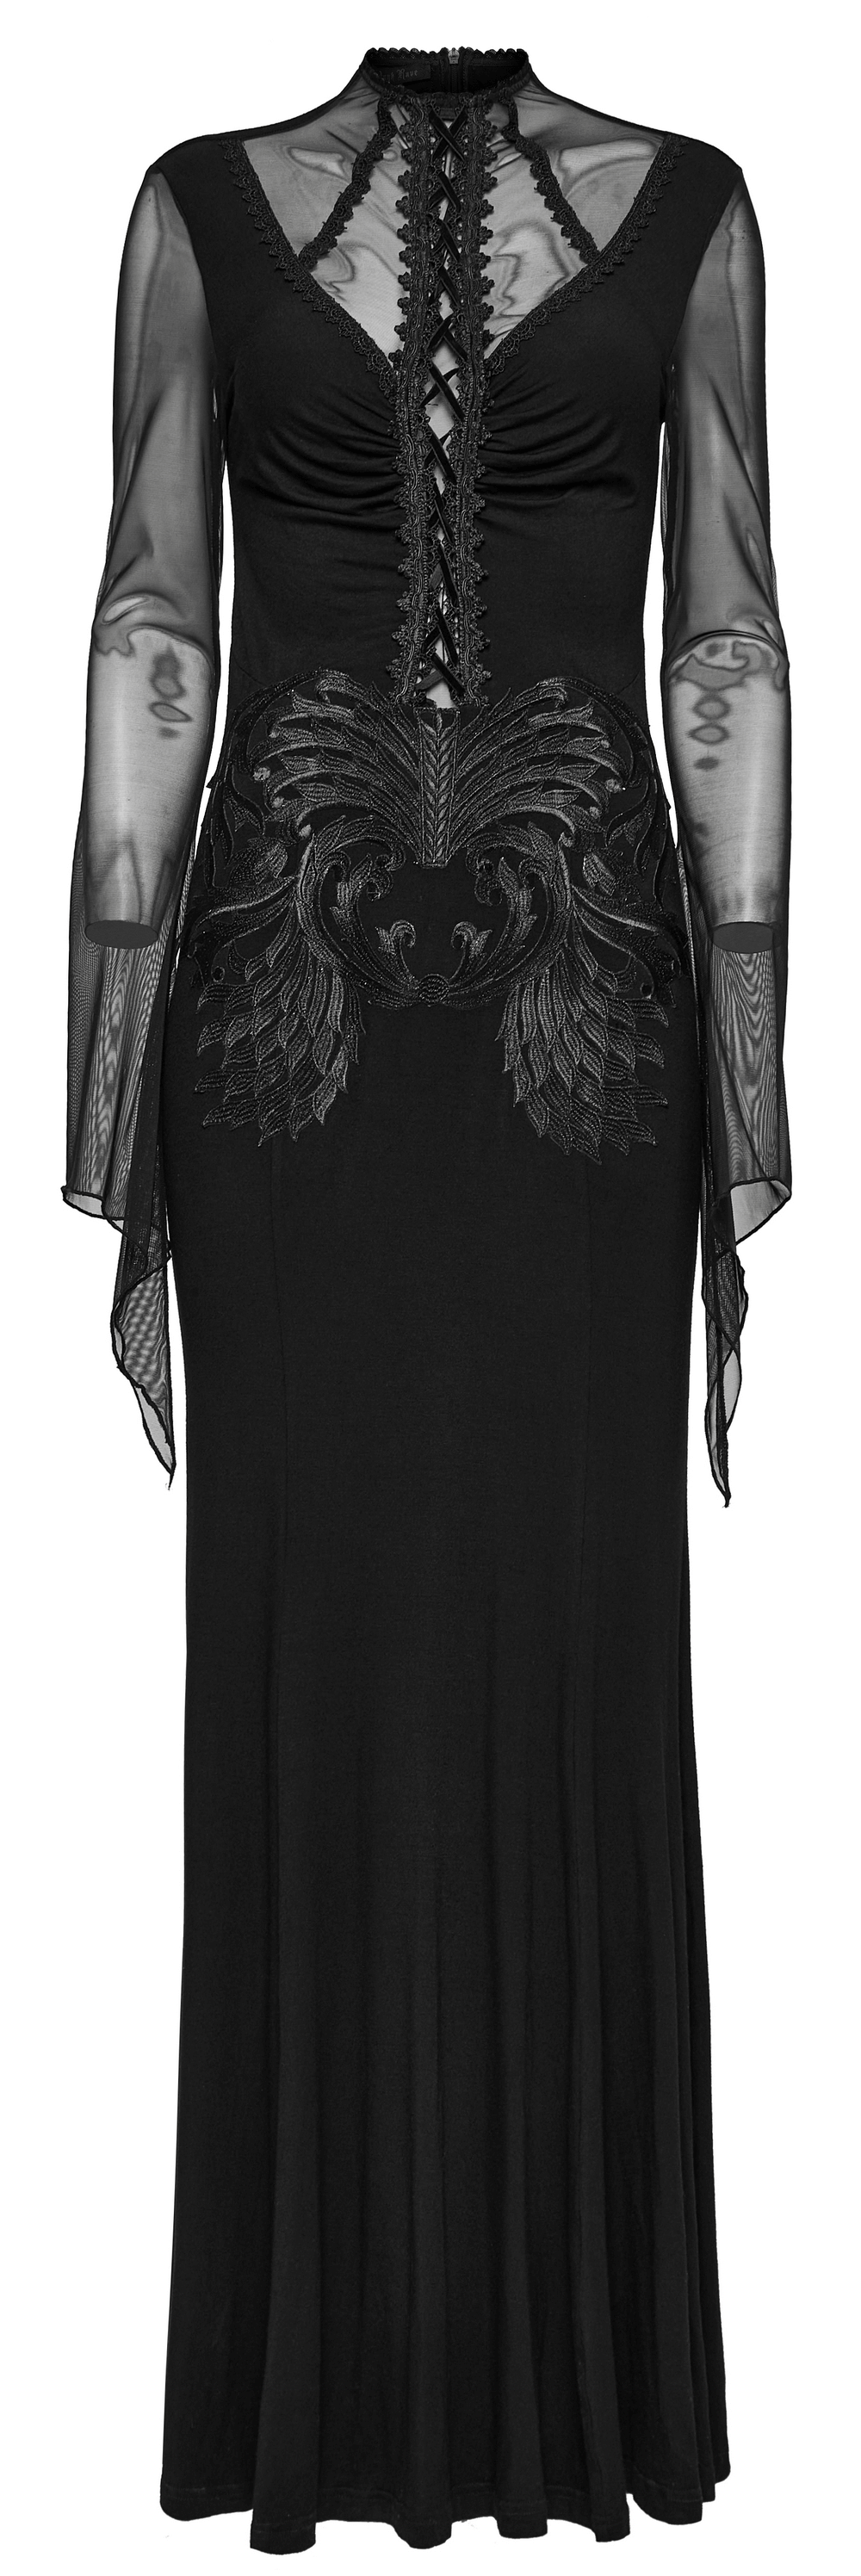 Robe gothique en dentelle et maille brodée pour femme